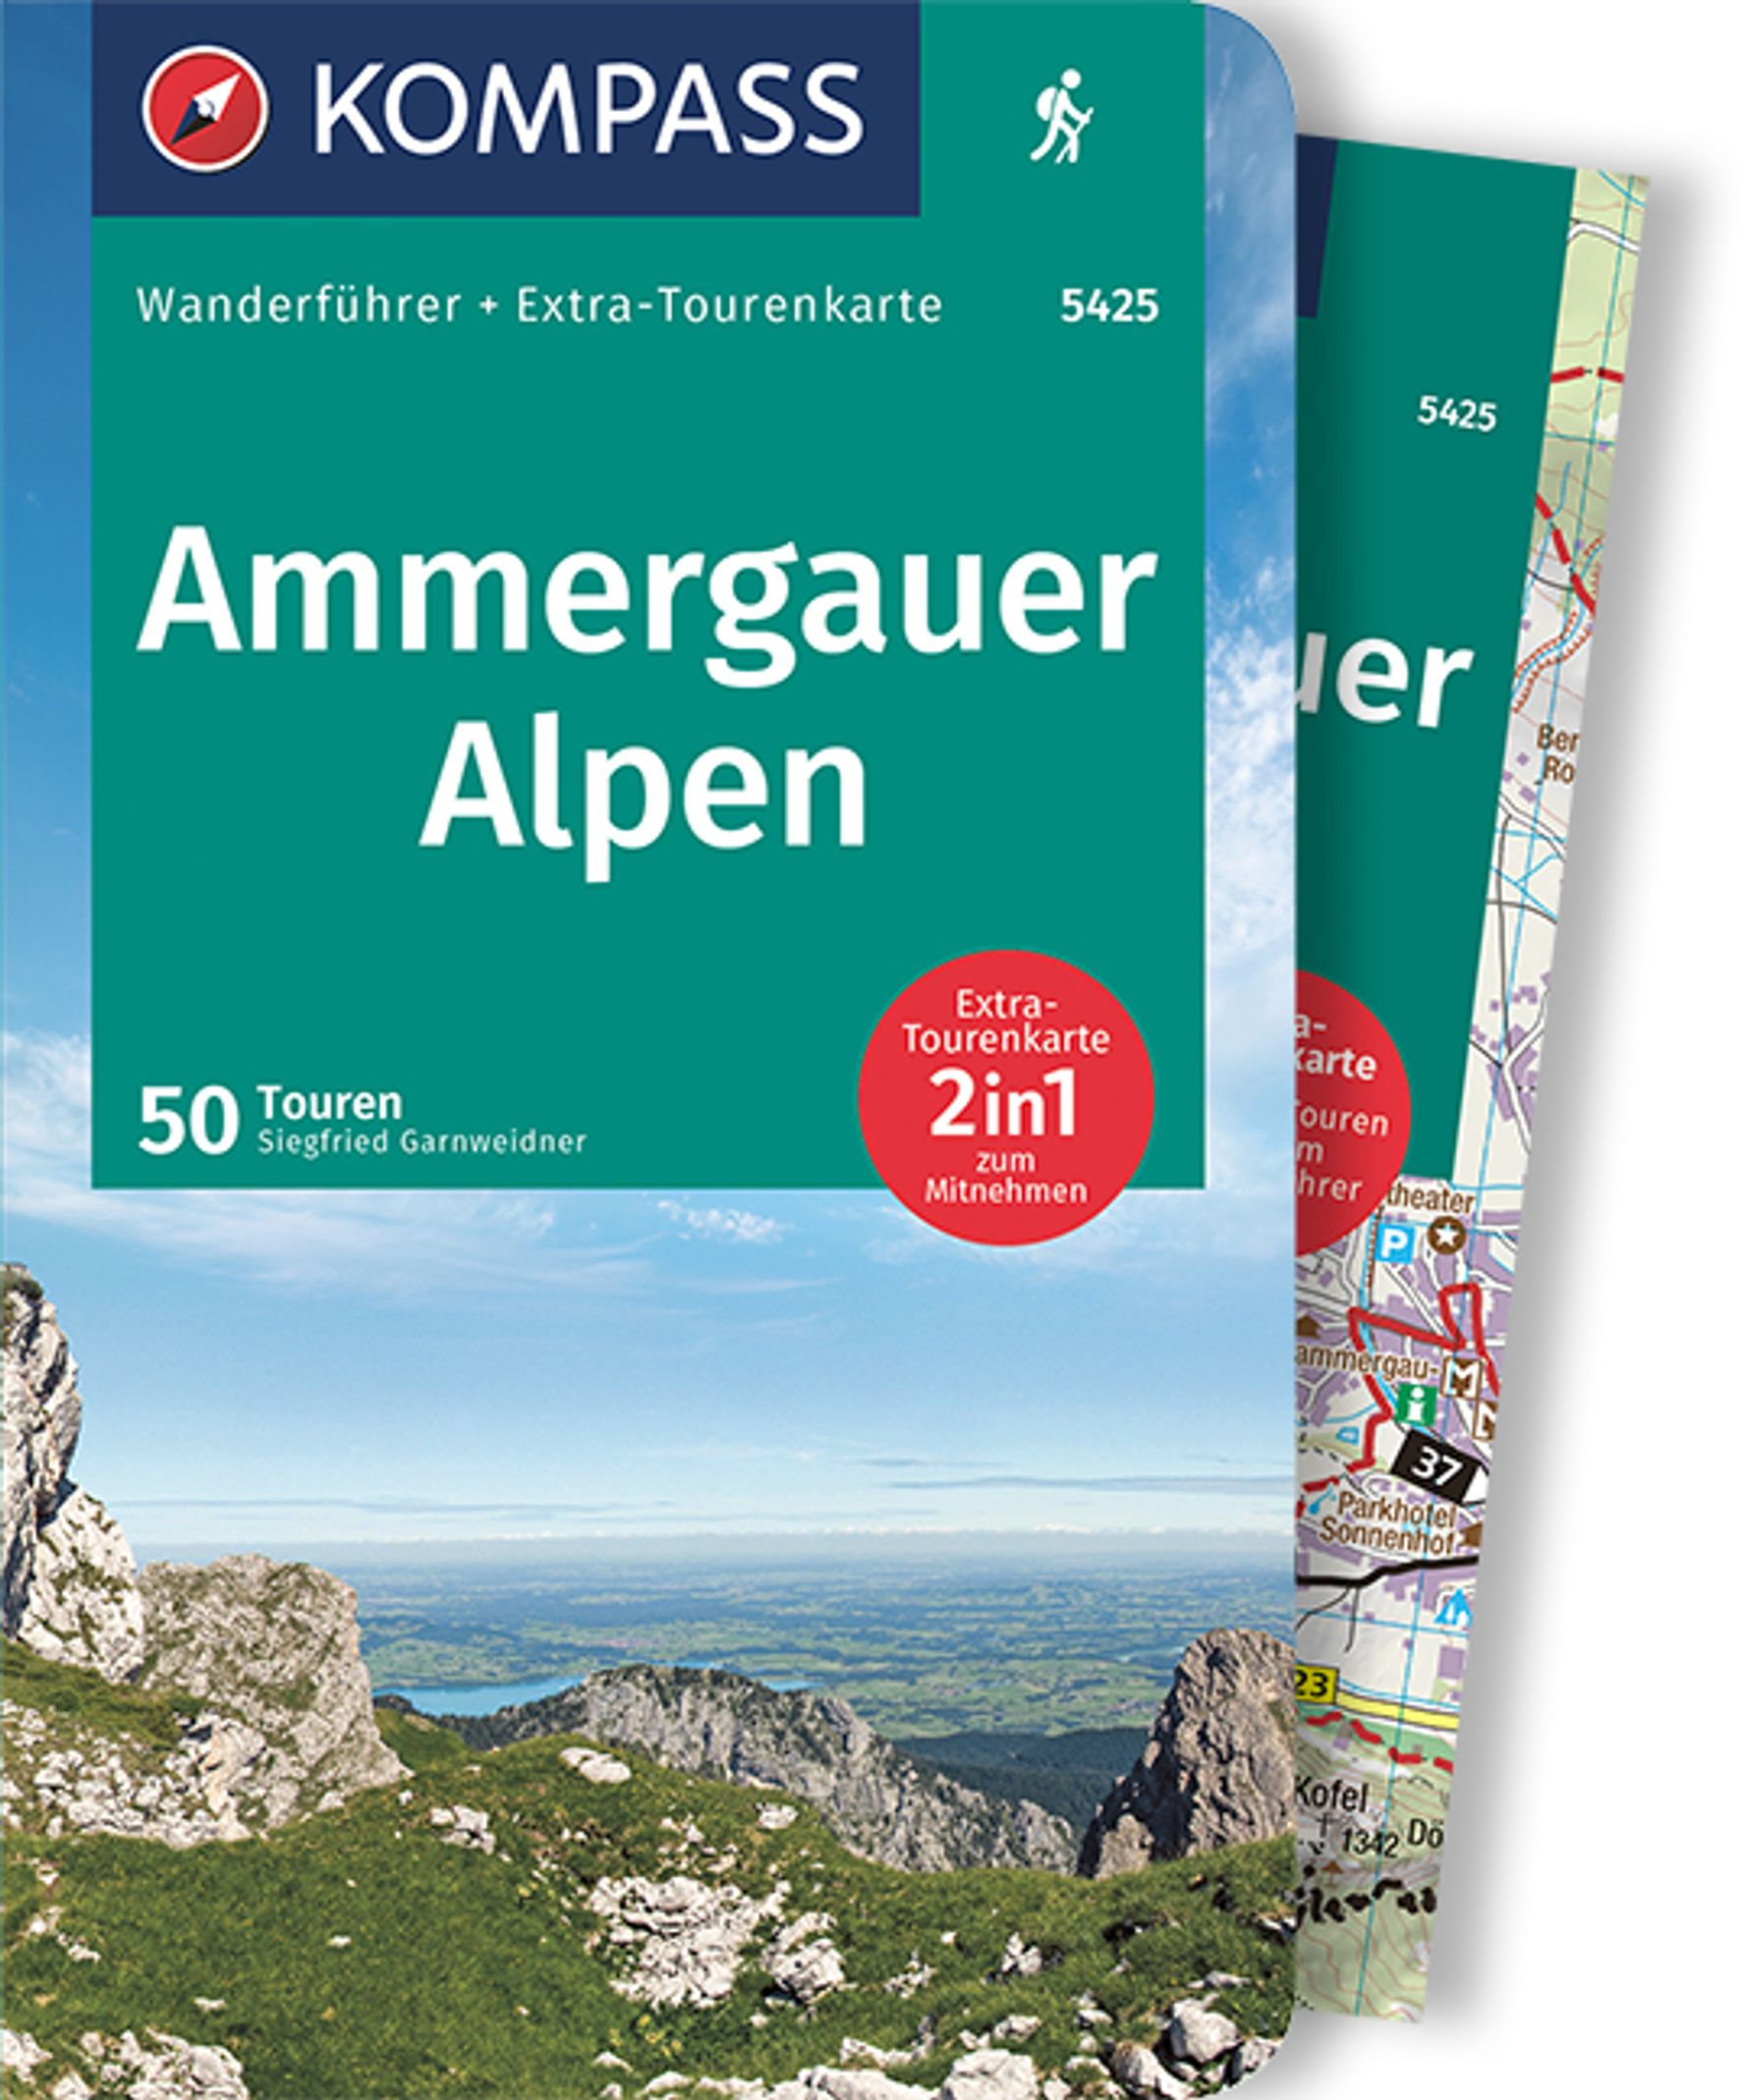 MAIRDUMONT Ammergauer Alpen, 50 Touren mit Extra-Tourenkarte